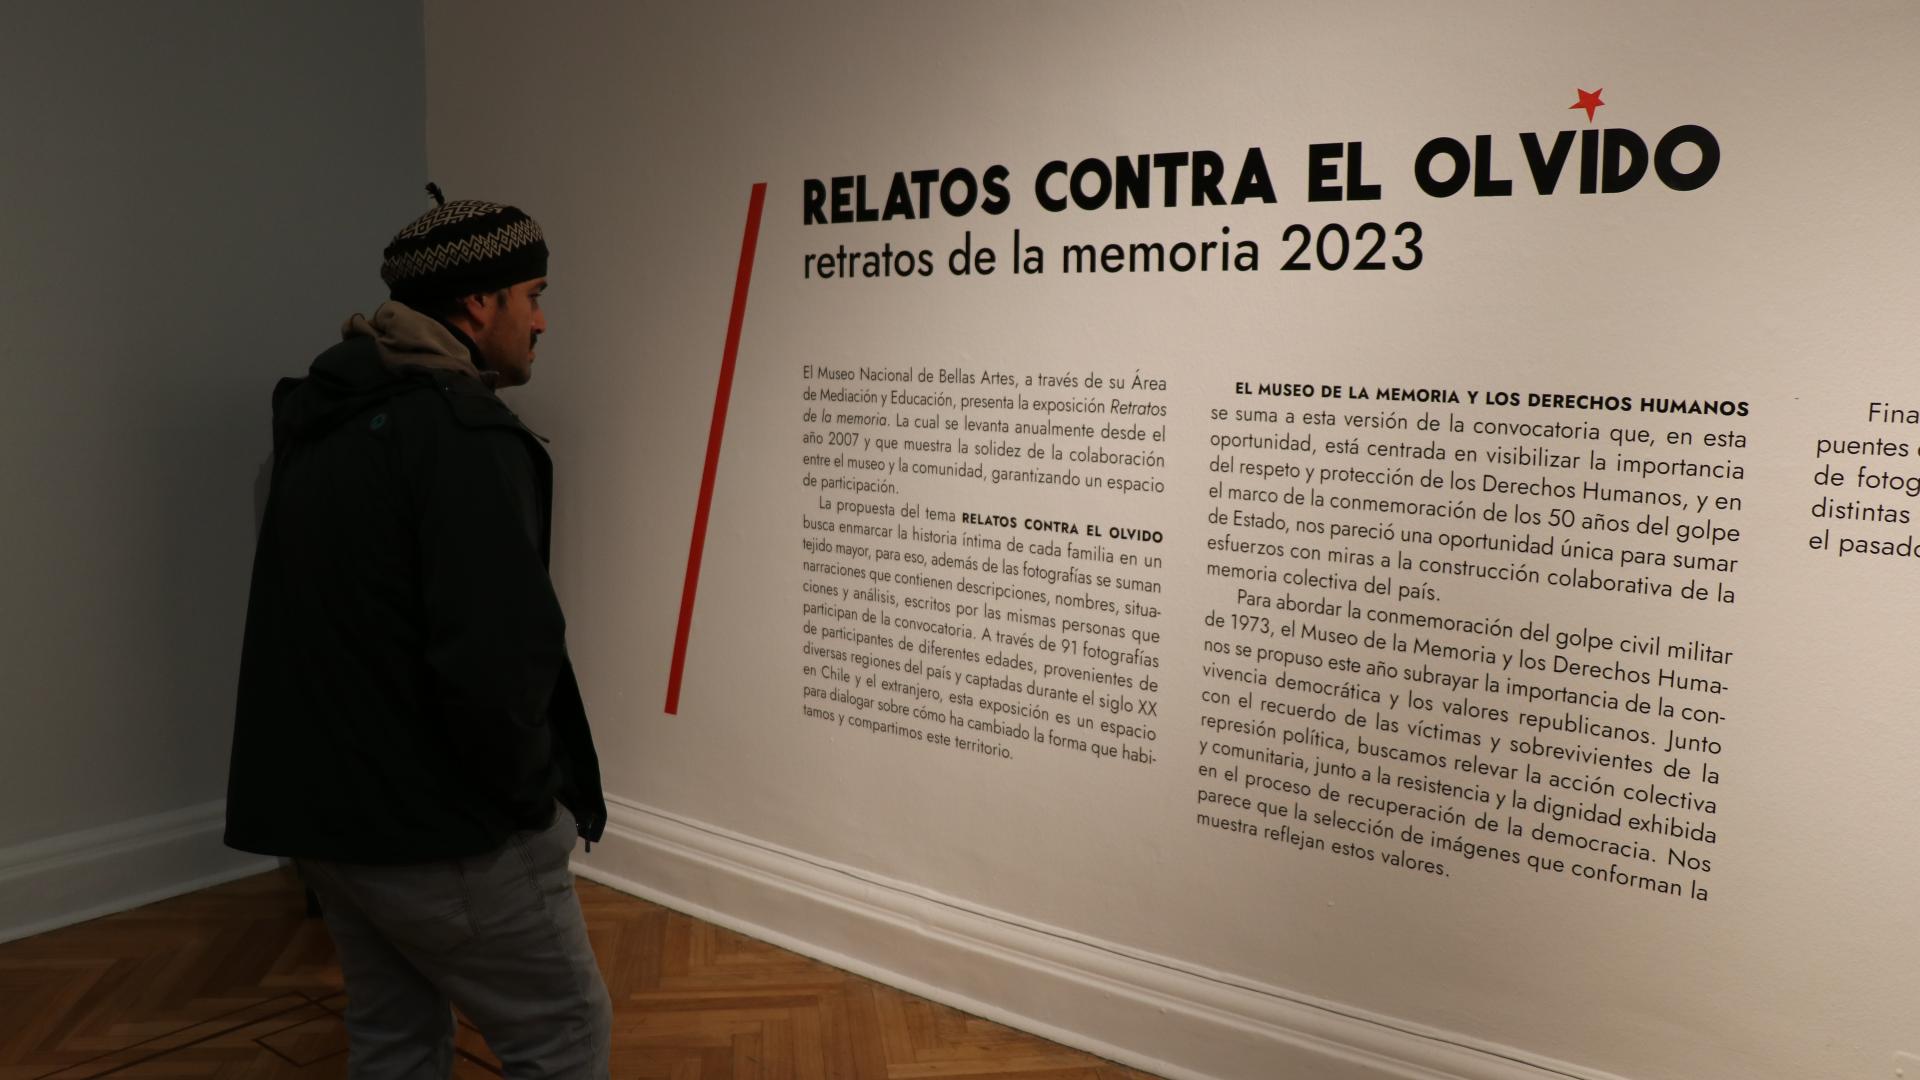 Hombre leyendo lo que dice en la pared con el título "Relatos contra el olvido"